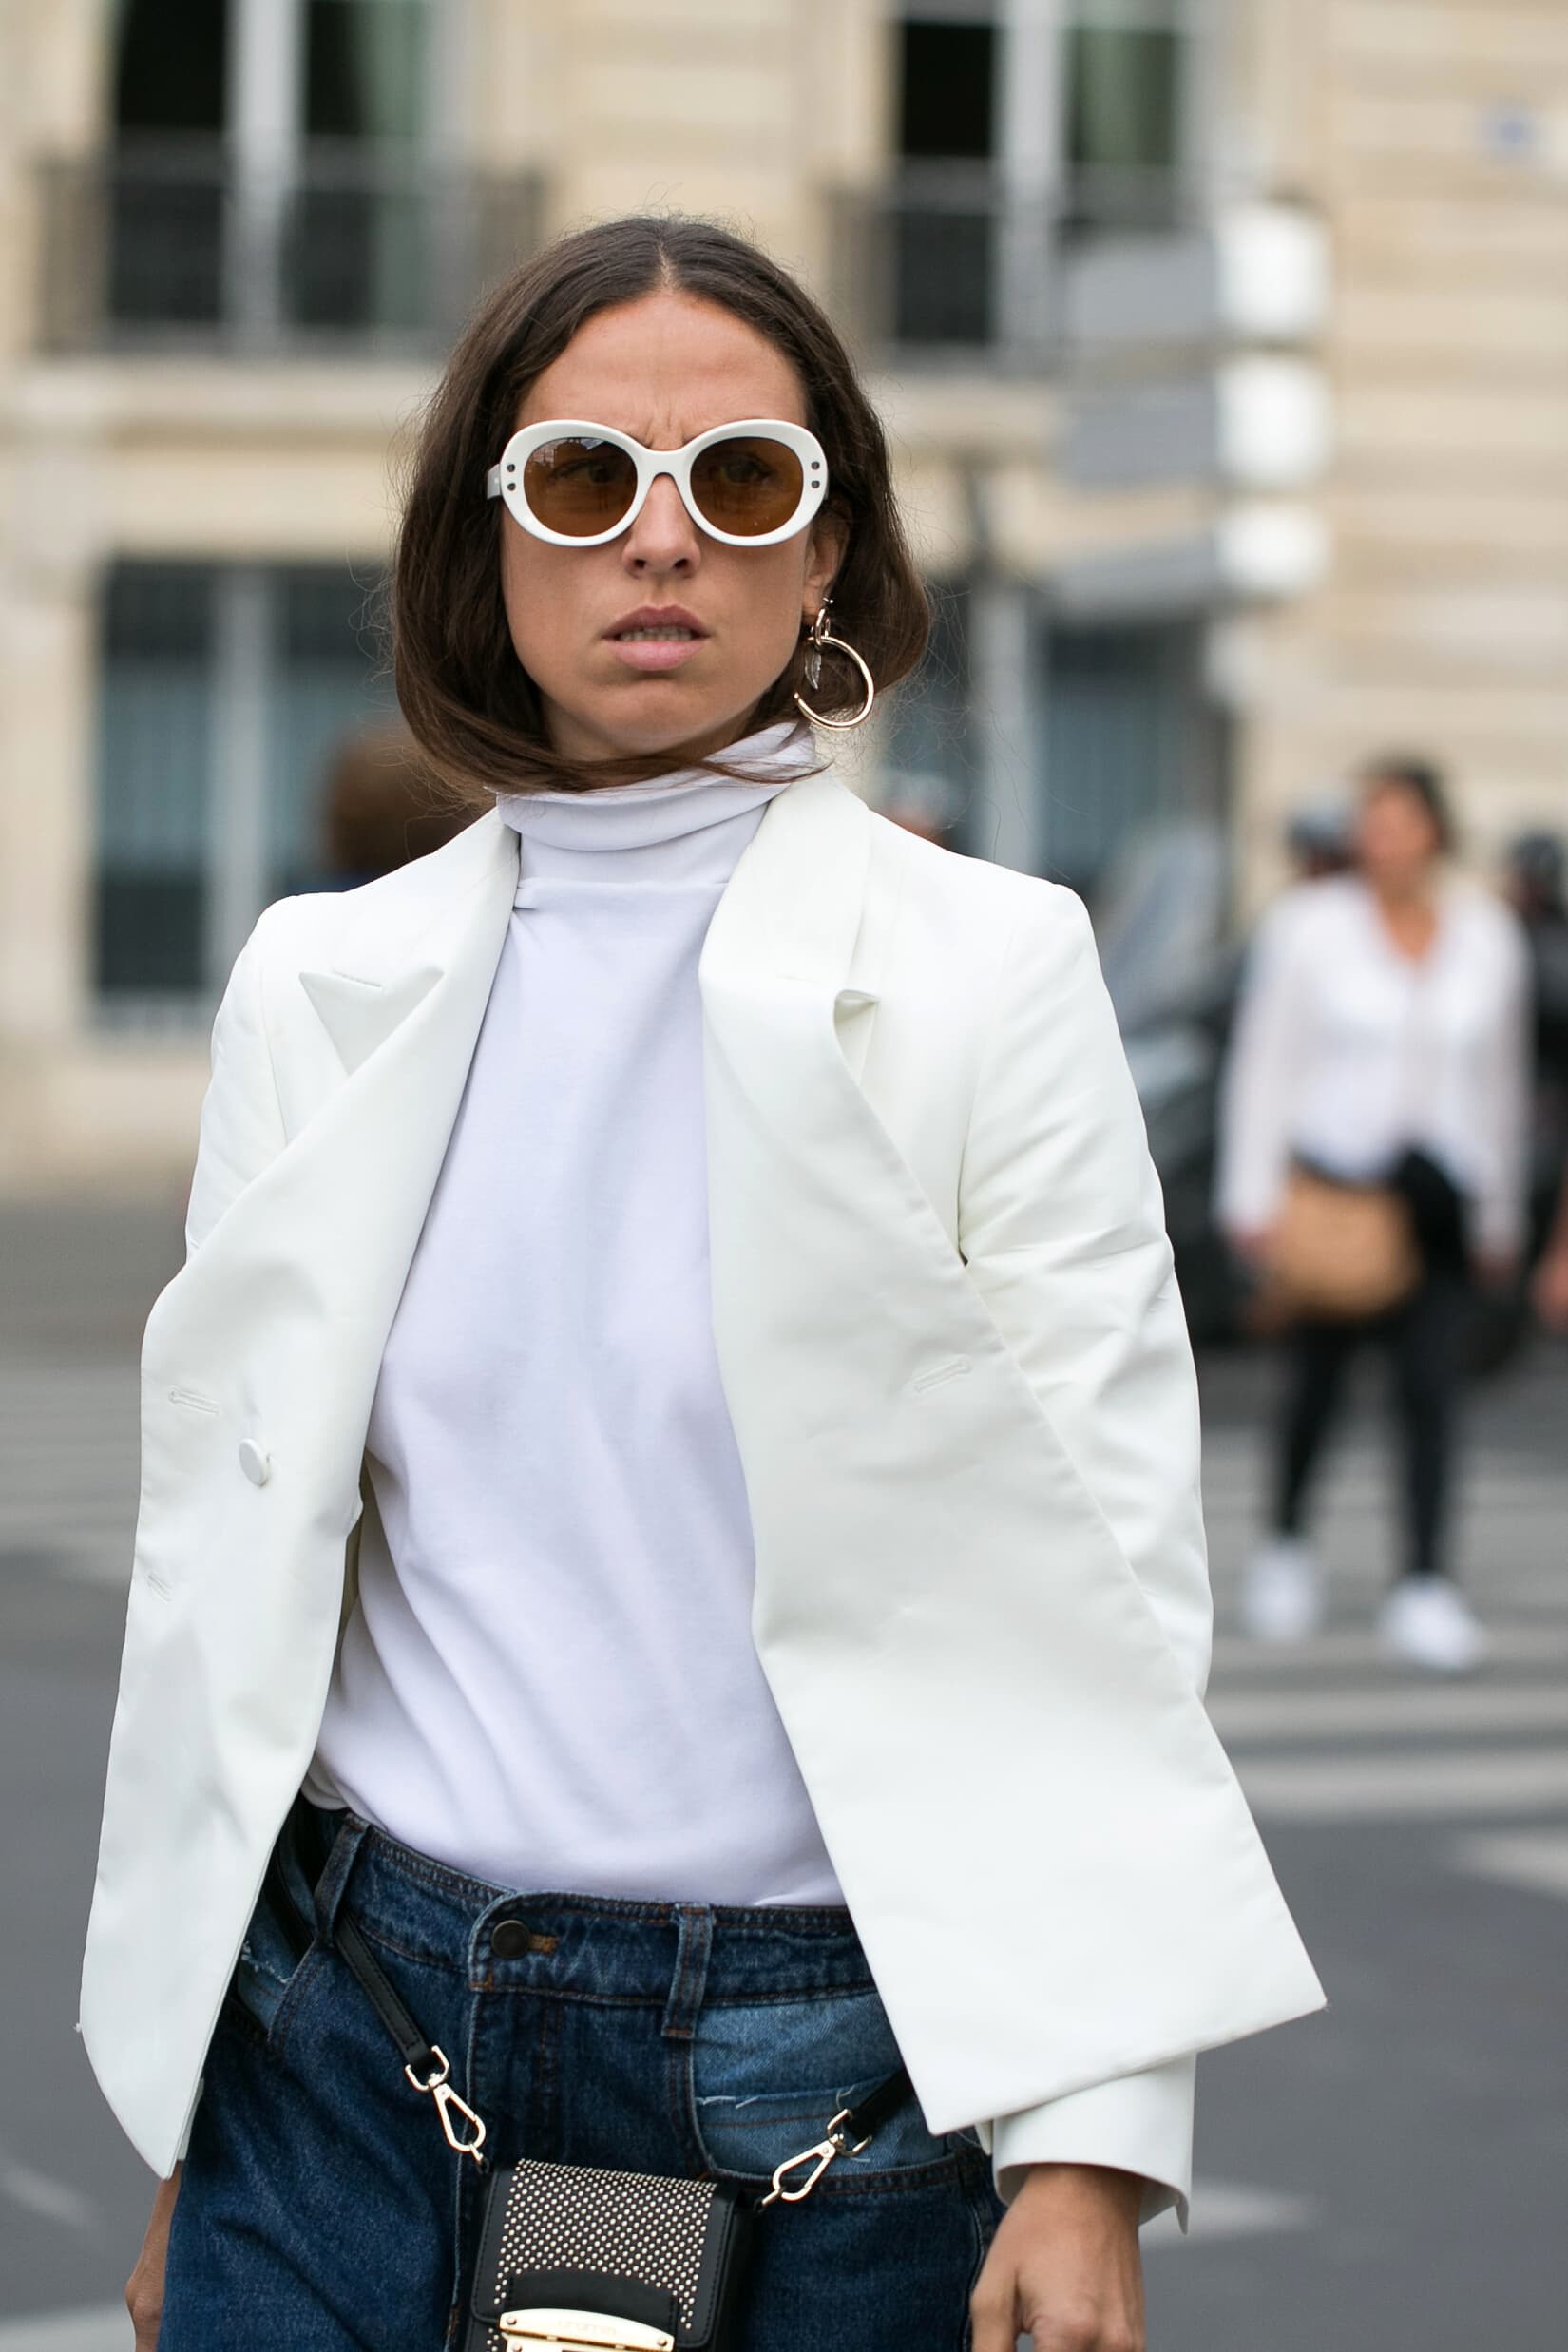 Lunettes blanches style années 60 à la Fashion Week de Paris Printemps/Été 2017 © DKSStyle/Shutterstock